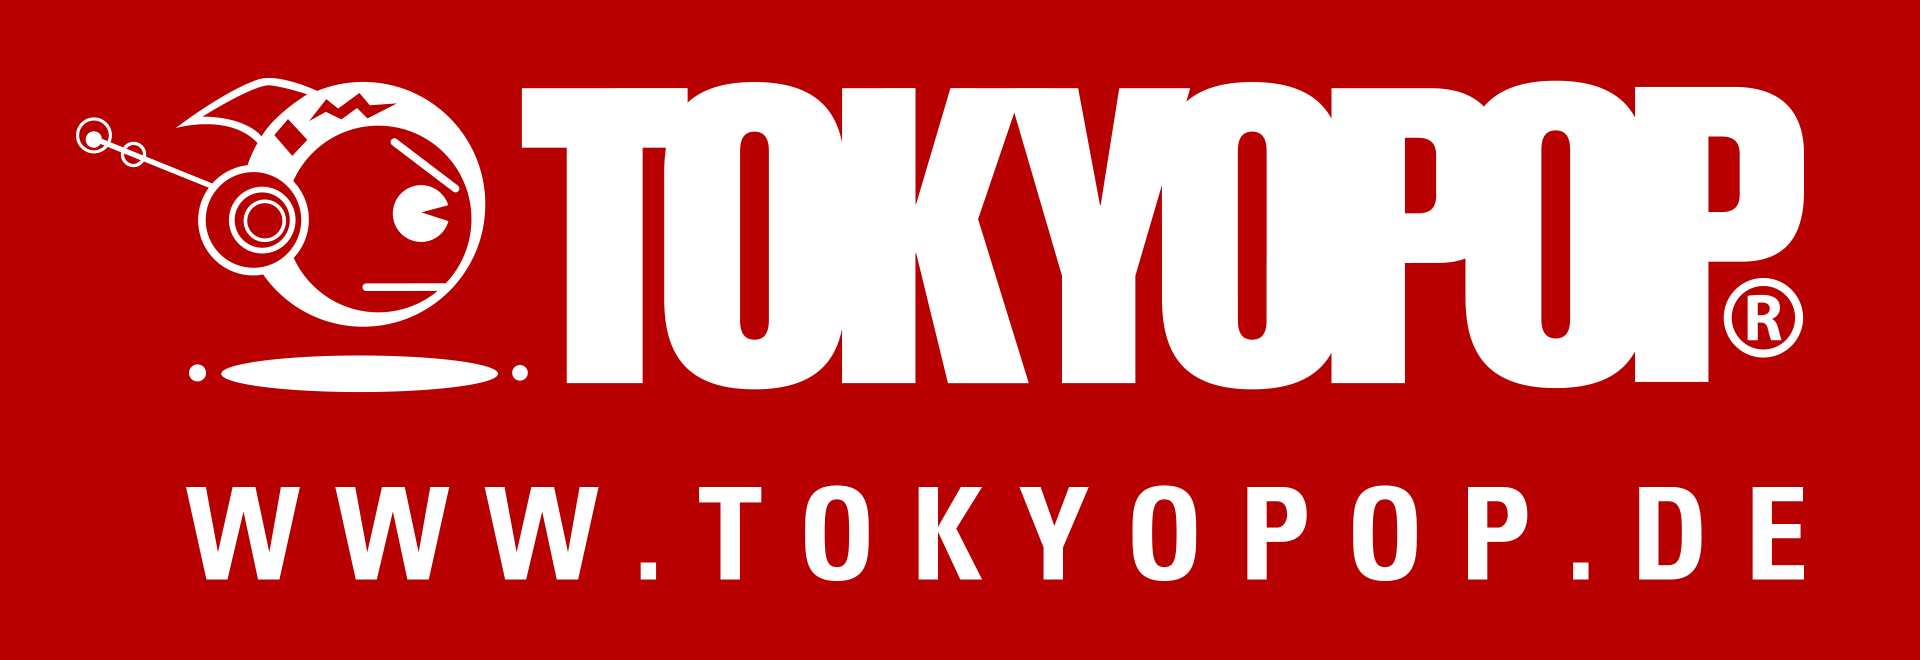 TOKYOPOP GmbH